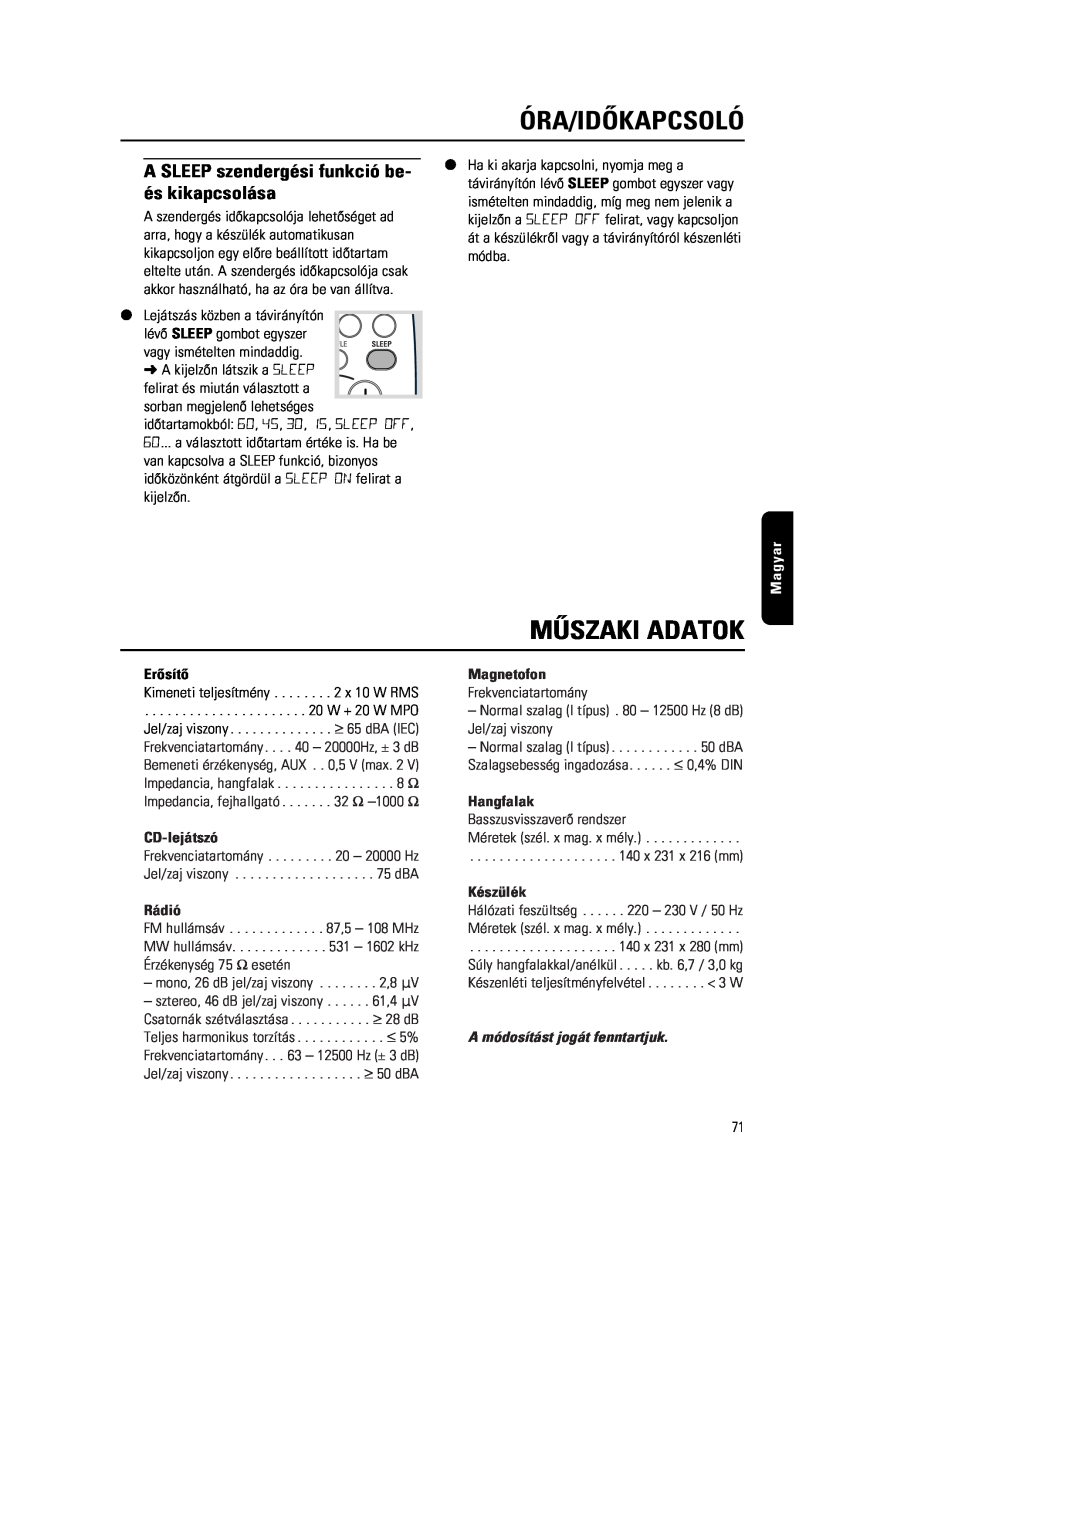 Philips MG222 Mûszaki Adatok, A SLEEP szendergési funkció be- és kikapcsolása, A módosítást jogát fenntartjuk, Magyar 